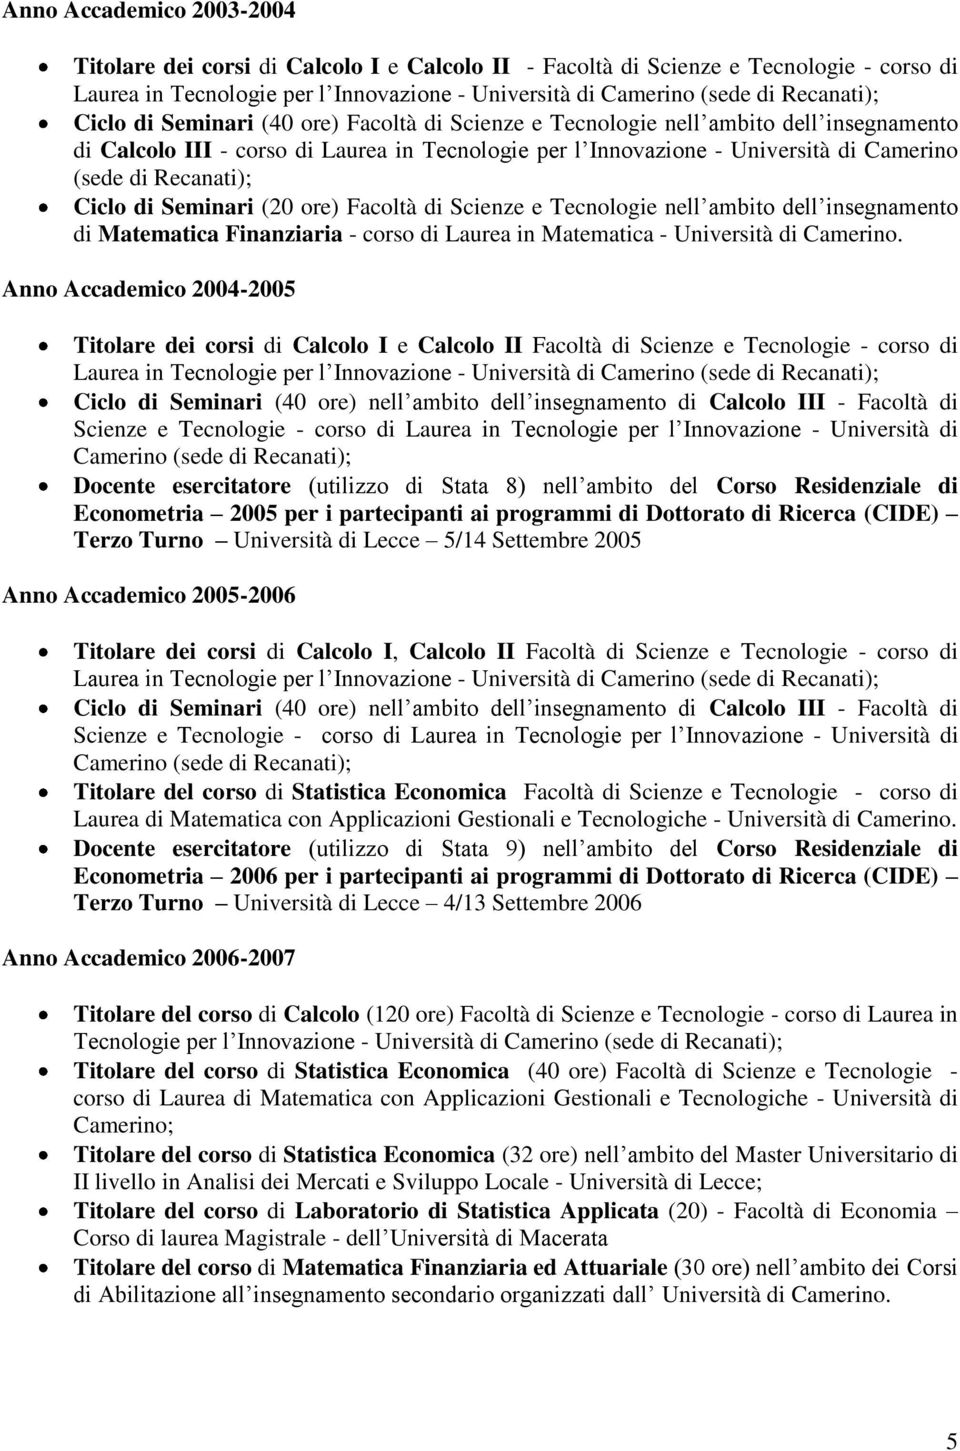 Ciclo di Seminari (20 ore) Facoltà di Scienze e Tecnologie nell ambito dell insegnamento di Matematica Finanziaria - corso di Laurea in Matematica - Università di Camerino.